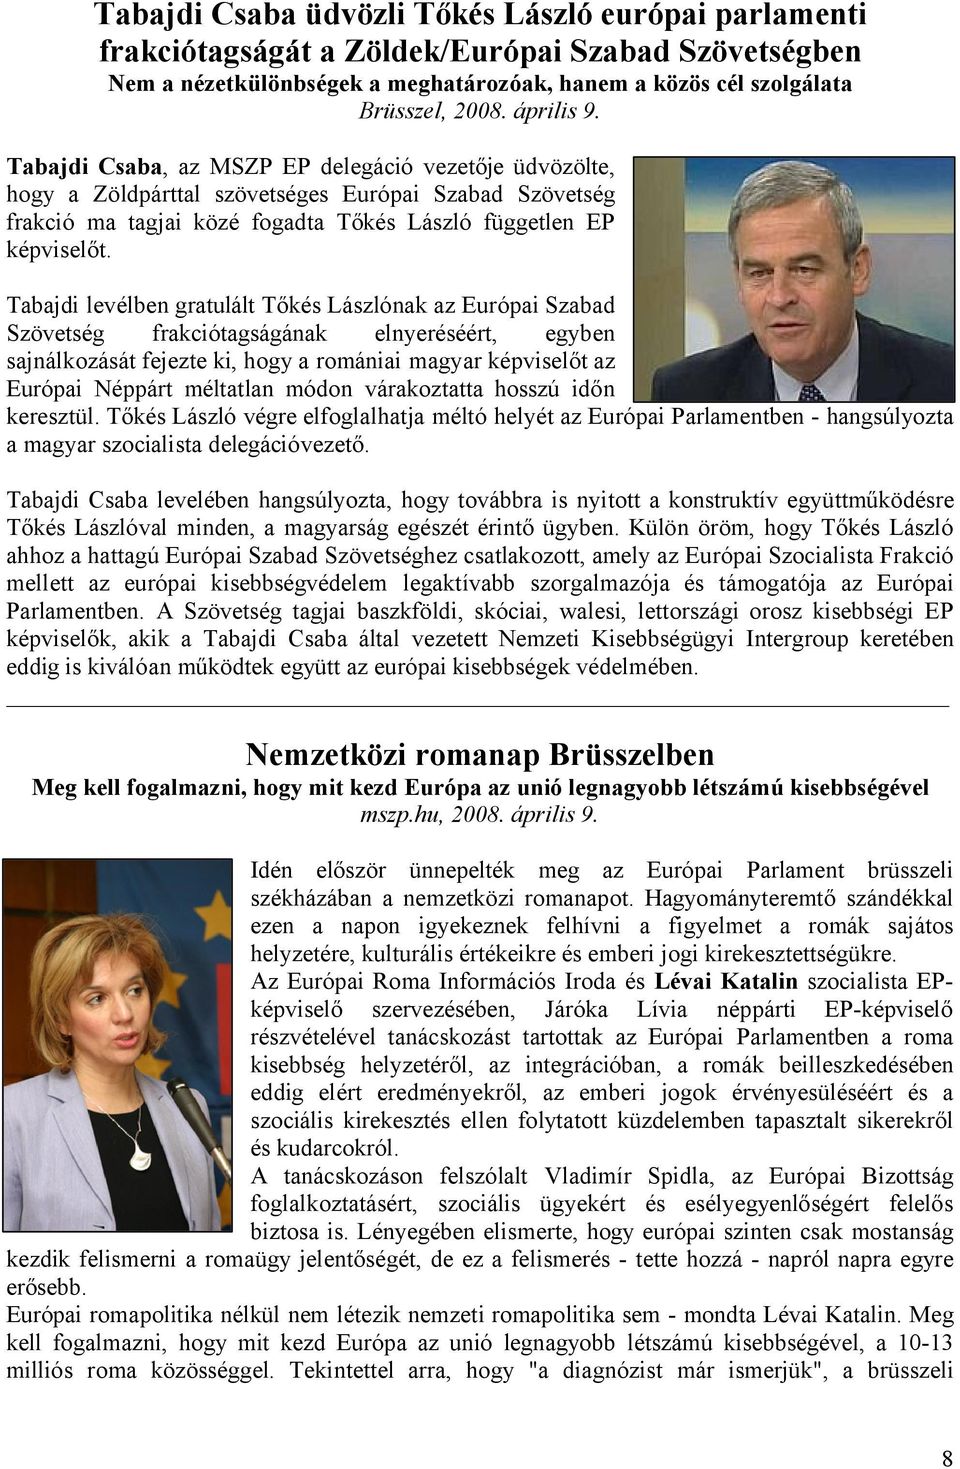 Tabajdi levélben gratulált Tőkés Lászlónak az Európai Szabad Szövetség frakciótagságának elnyeréséért, egyben sajnálkozását fejezte ki, hogy a romániai magyar képviselőt az Európai Néppárt méltatlan